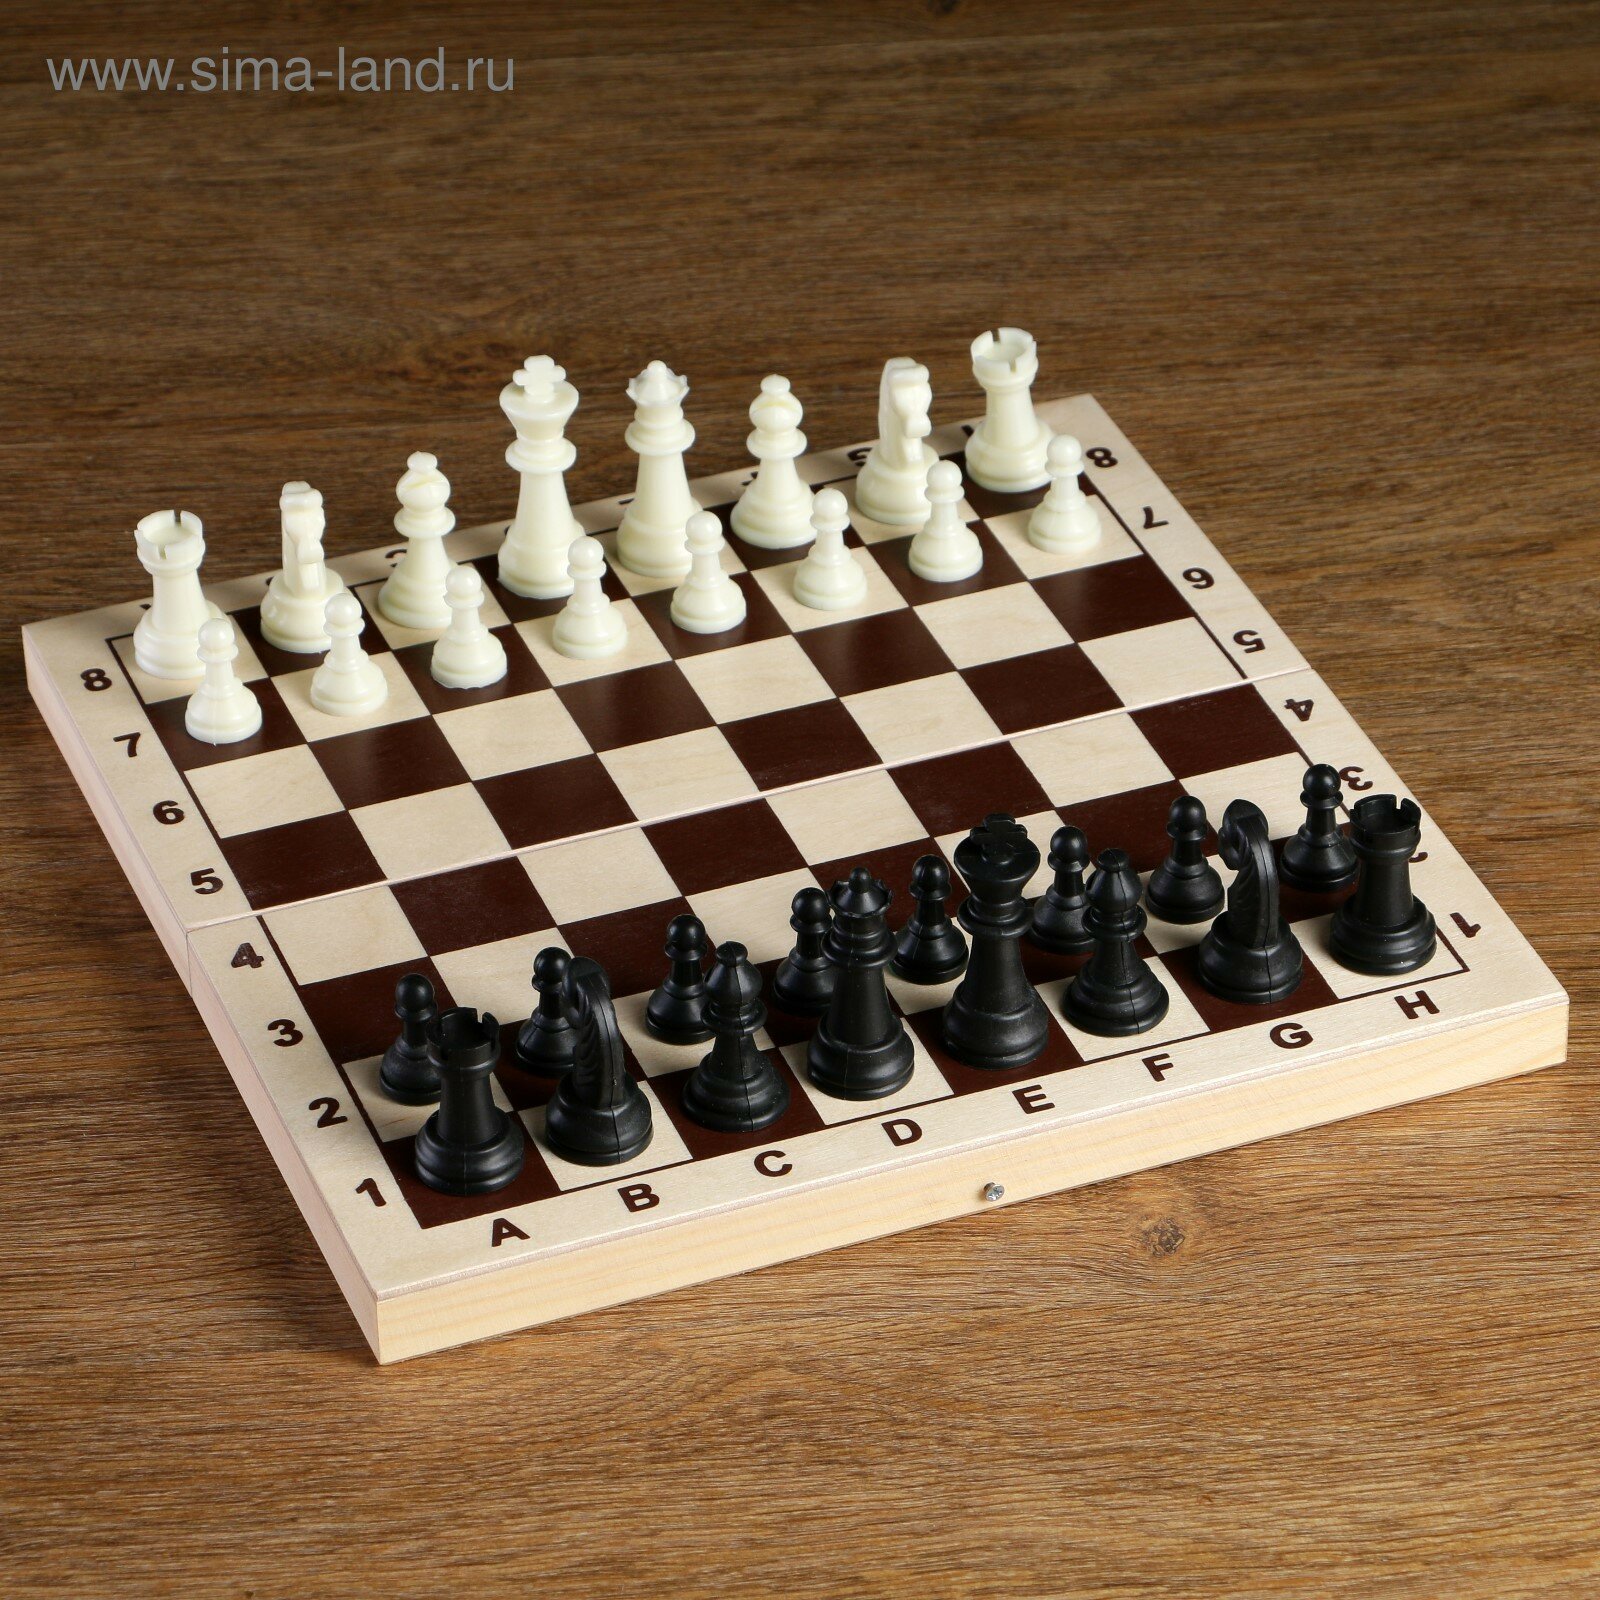 Шахматные фигуры, пластик, король h-6.2 см, пешка h-3 см (1шт.)